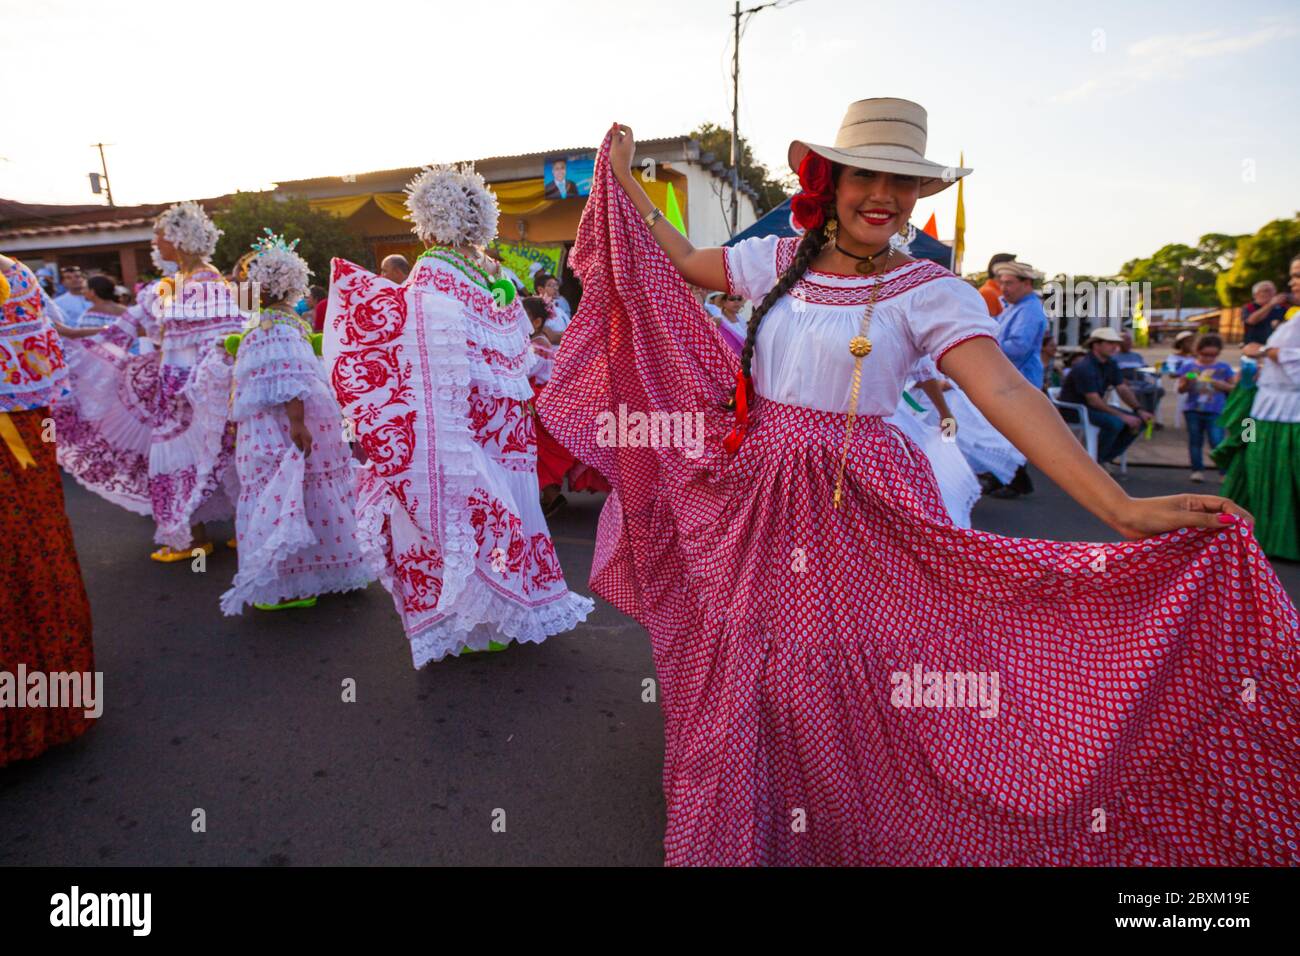 Frau in pollera während der jährlichen Veranstaltung "El desfile de las mil polleras" (tausend polleras) in Las Tablas, Los Santos Provinz, Republik Panama. Stockfoto